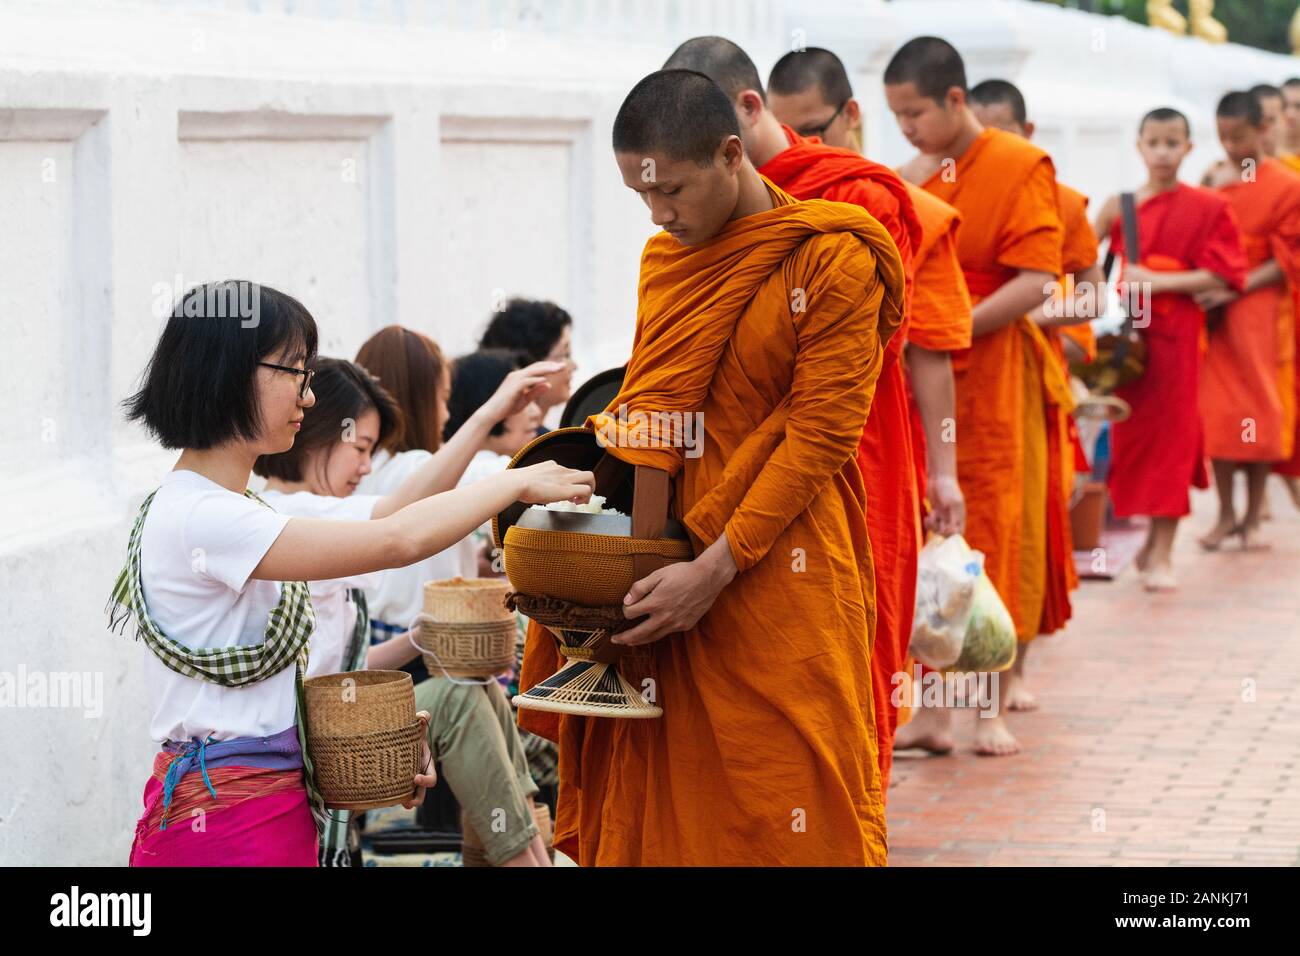 Luang Prabang, Laos - Mai 2019 : femme laotienne en faisant des offrandes aux moines bouddhistes pendant la cérémonie traditionnelle aumône matin Banque D'Images